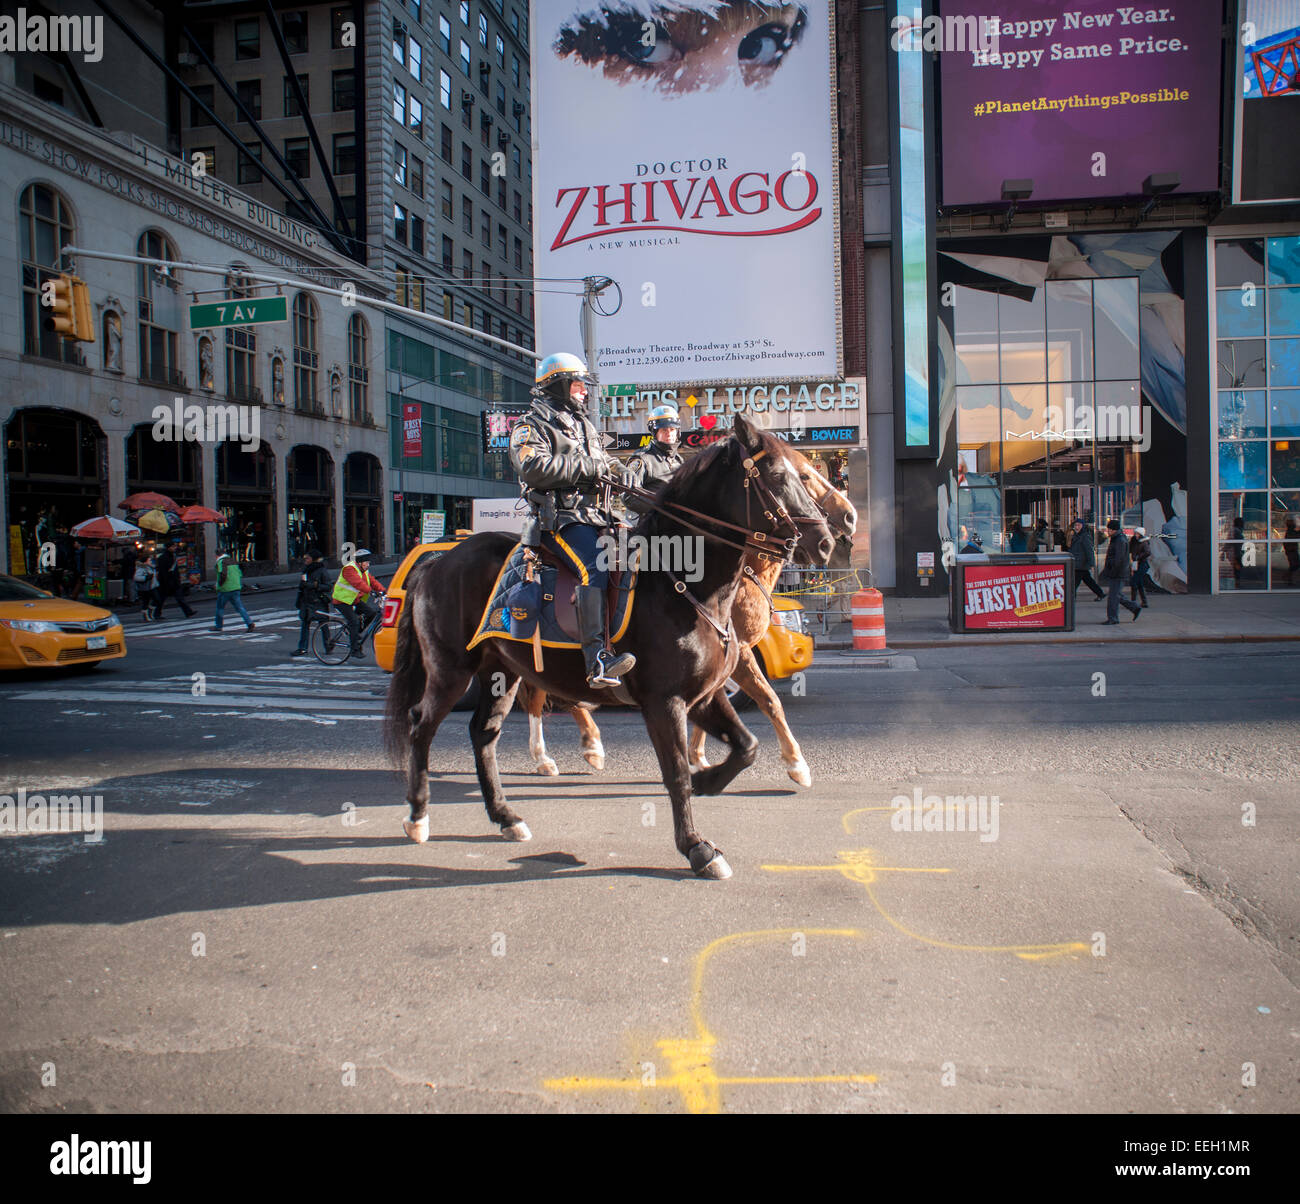 NYPD Offiziere auf Patrouille am Times Square in New York auf Donnerstag, 15. Januar 2015 montiert. Wegen der Bedrohung durch ISIS hat das NYPD Sicherheit in hochrangige Positionen in der Stadt wie dem Times Square erhöht. (© Richard B. Levine) Stockfoto